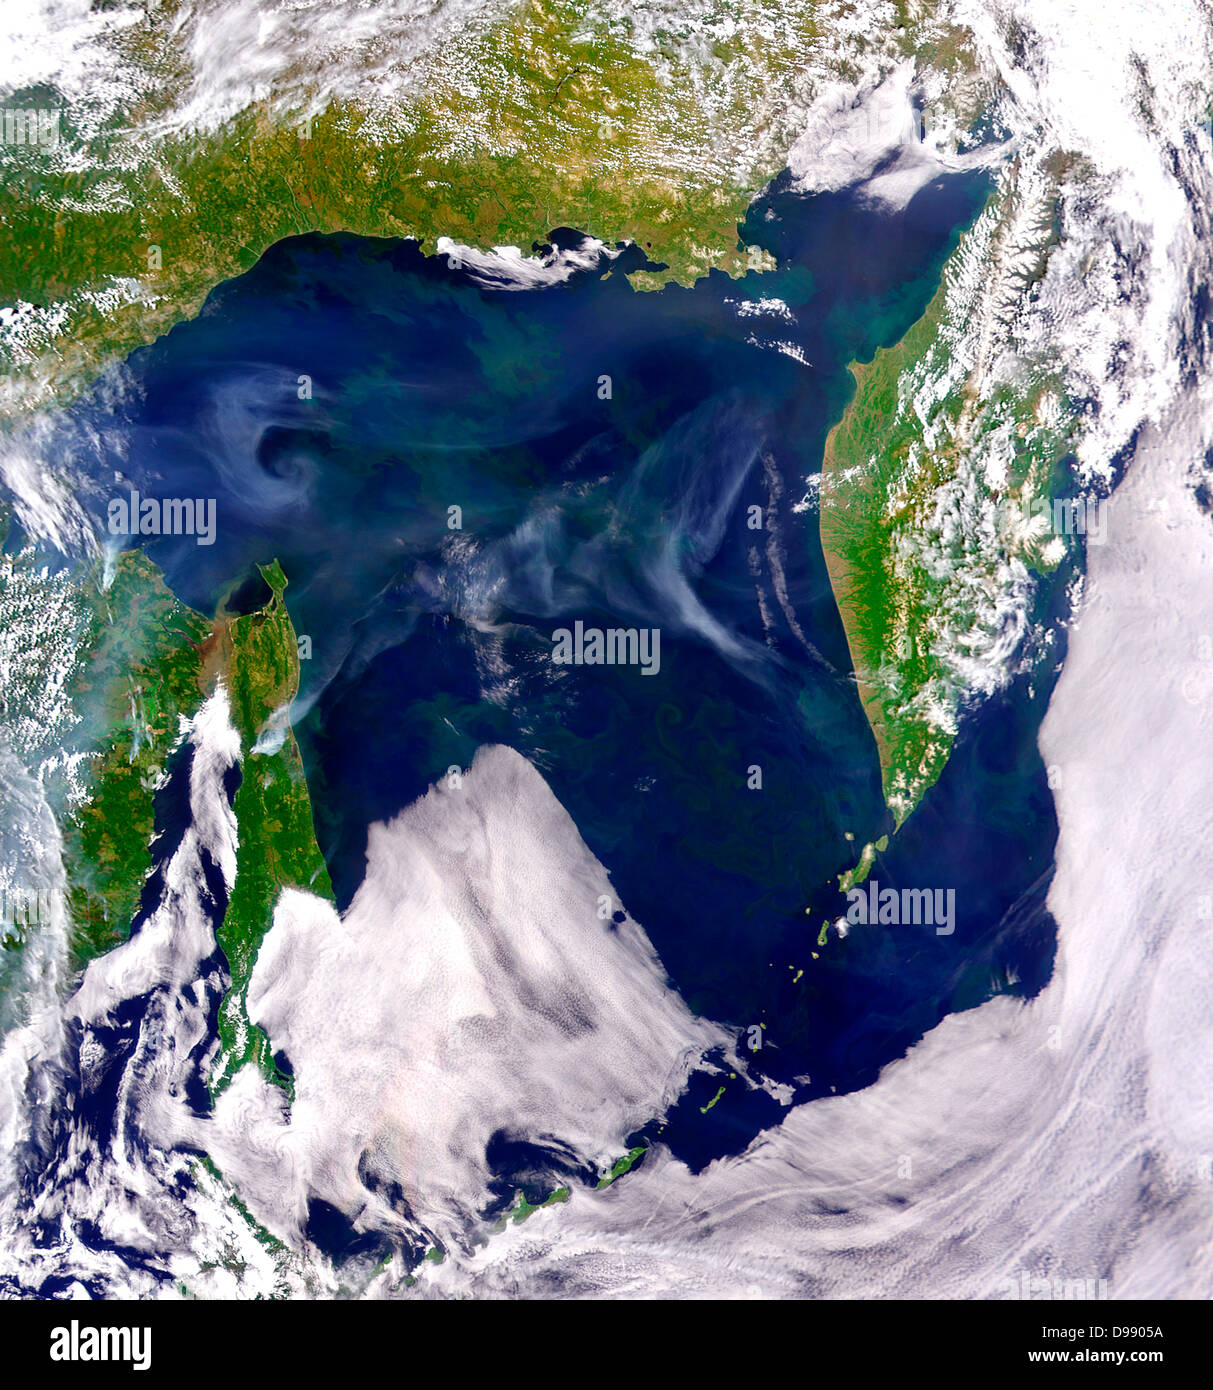 Rauch im Ochotskischen Meer Bilder & Animationen NASA/Goddard Space Flight Center und ORBIMAGE Rauch von Waldbränden in Osteuropa Russland hängt über dem Ochotskischen Meer in diesem SeaWiFS Bild ab 2. Juli 2003. Am 2. Juli 2003, das Sea-viewing Wide Field-of-View Sensor (SeaWiFS) gesammelt dieses Bild des Ochotskischen Meeres, Osten Russlands. Uneinheitliche phytoplankton Blüte füllen die Oberflächengewässer, färben Sie Grün. Trübe, bräunlichen Wasser fließt vom Amur in Zahnstein-Straße, zwischen Russland und der Insel Sachalin (links der Bildmitte). Rauch aus regionalen Brände Drifts über den Himmel Stockfoto